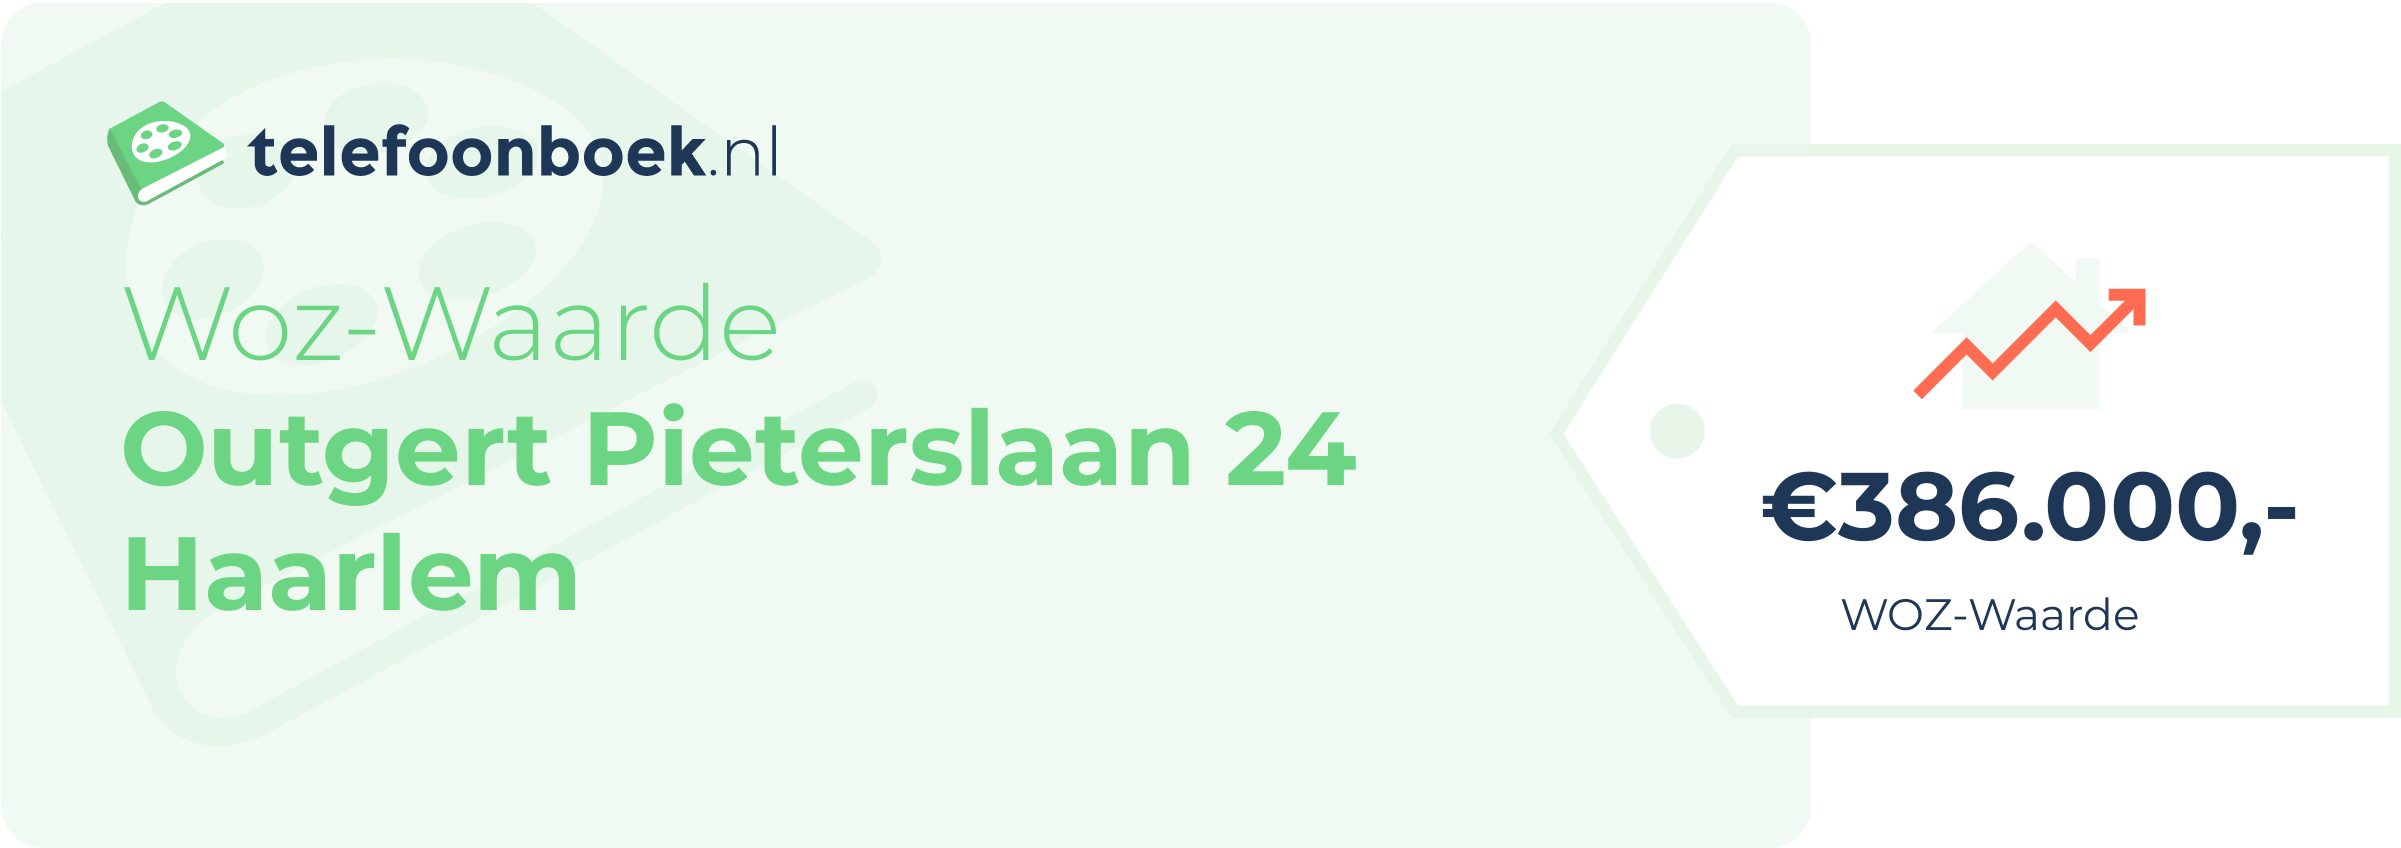 WOZ-waarde Outgert Pieterslaan 24 Haarlem